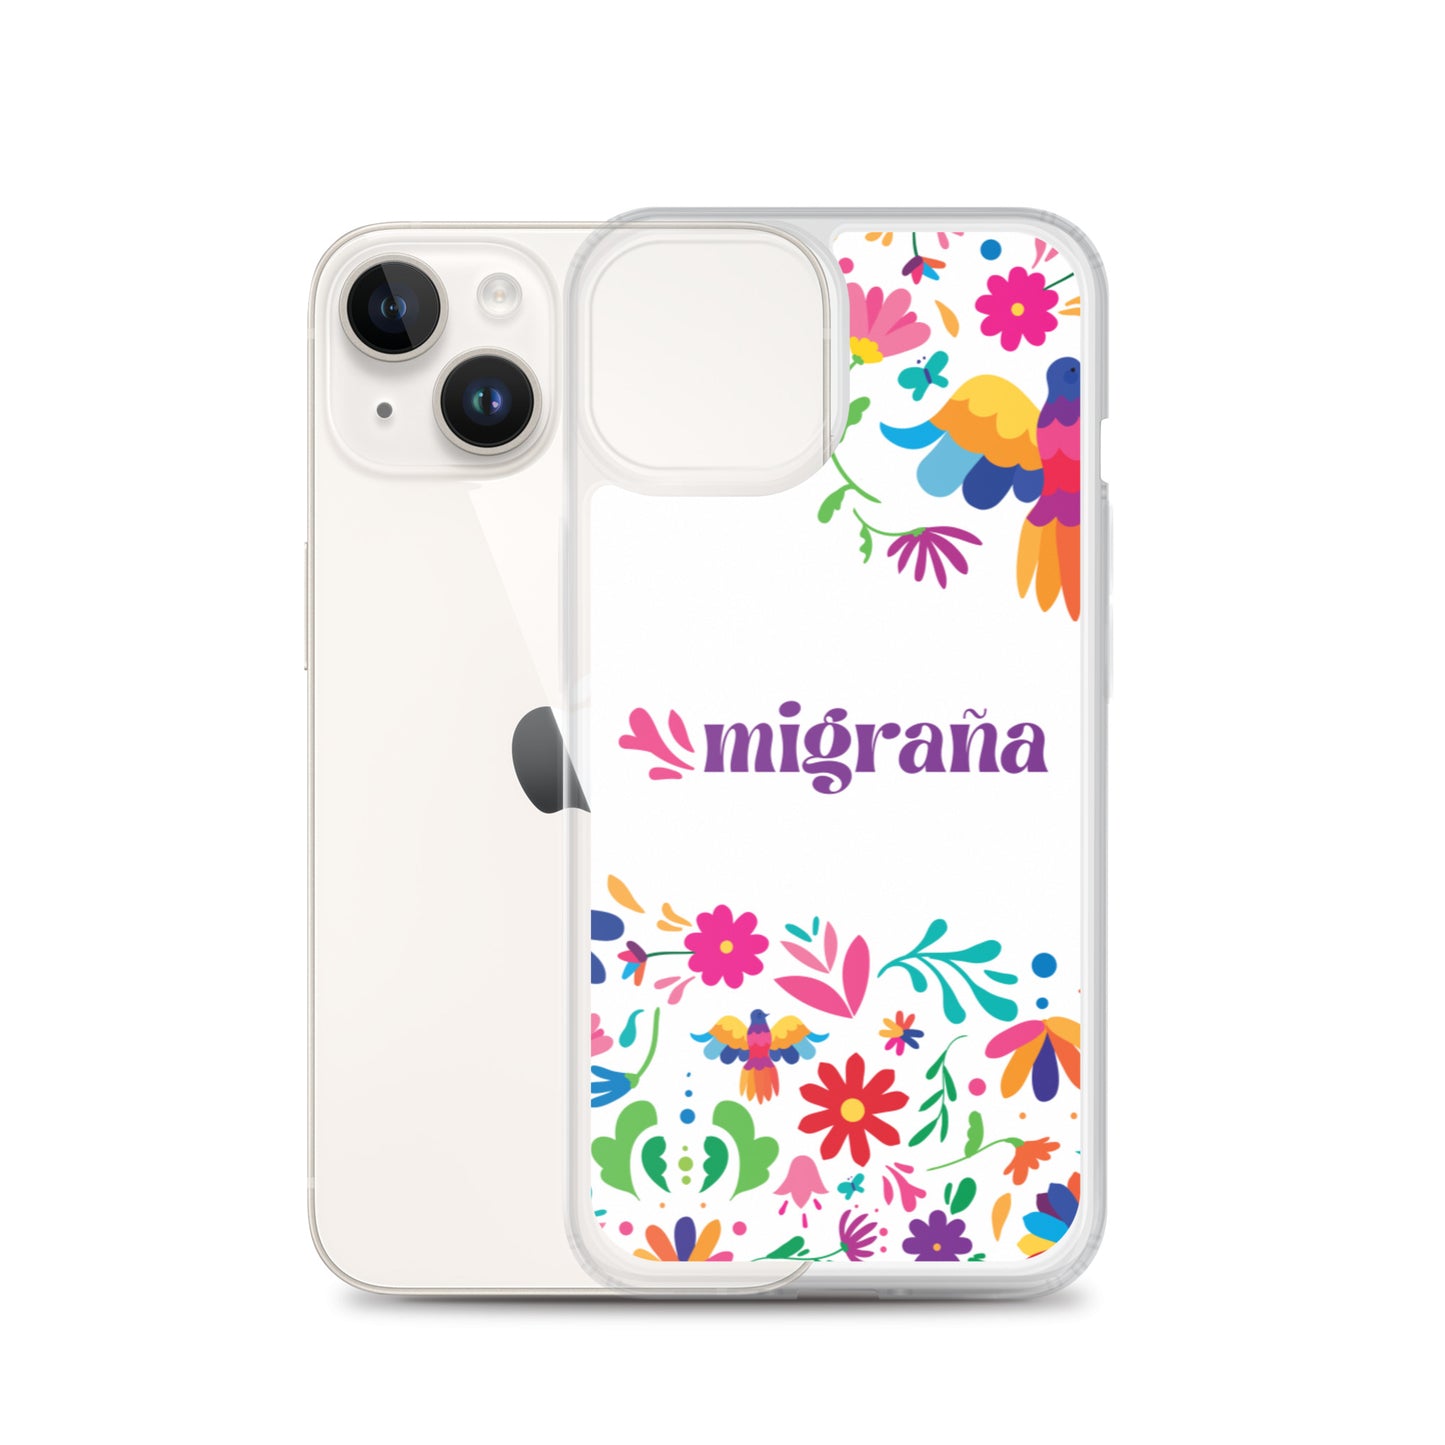 Migraña iPhone Case